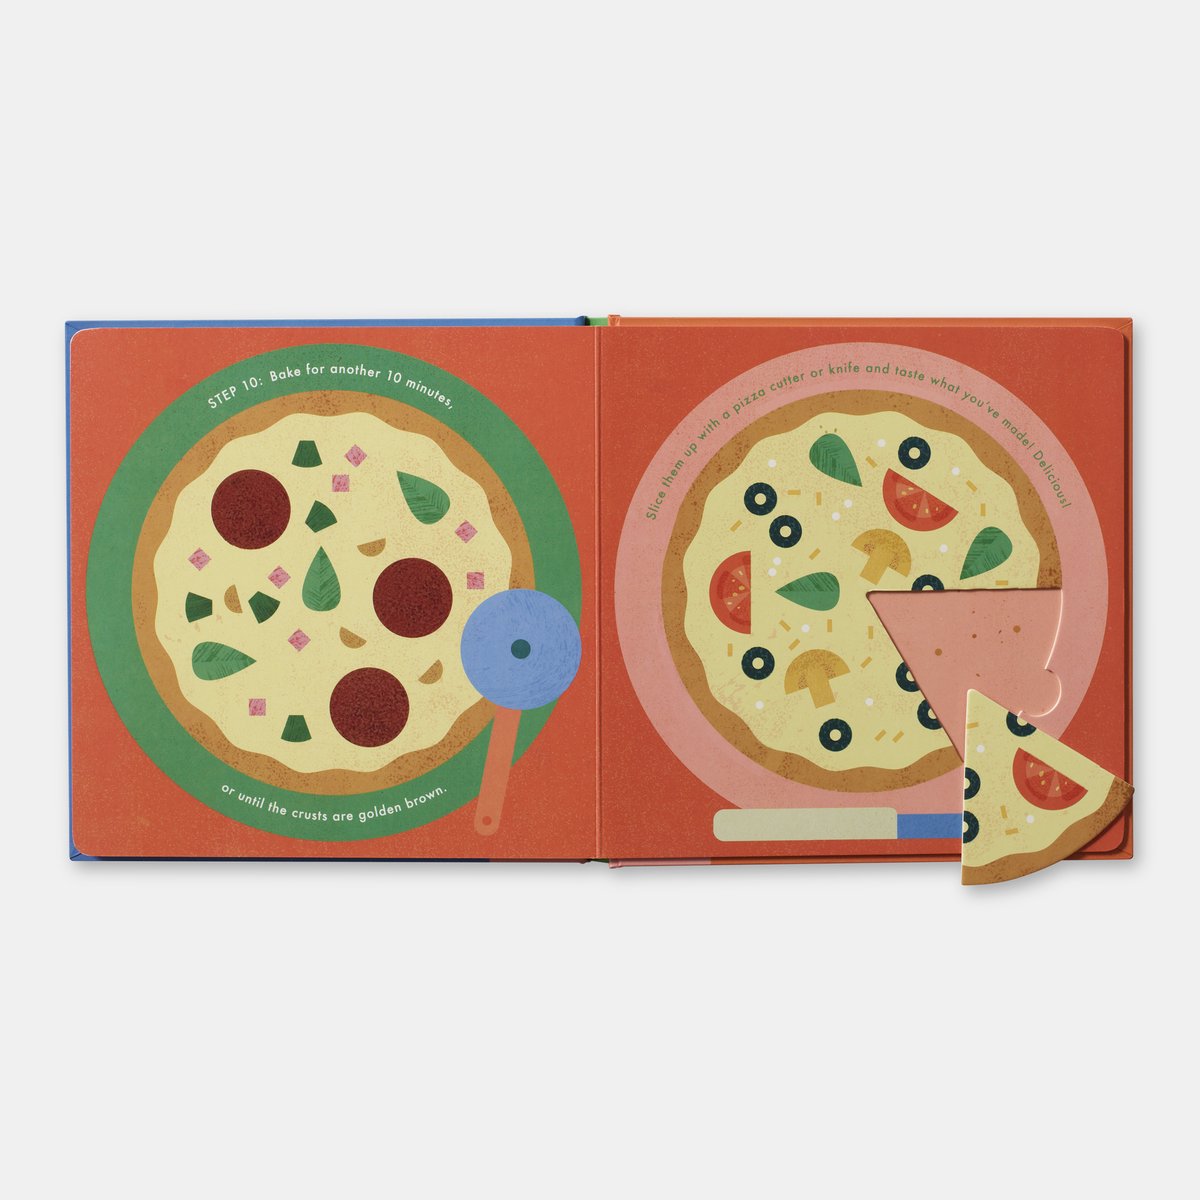 Phaidon - Kookboek 'Pizza!'